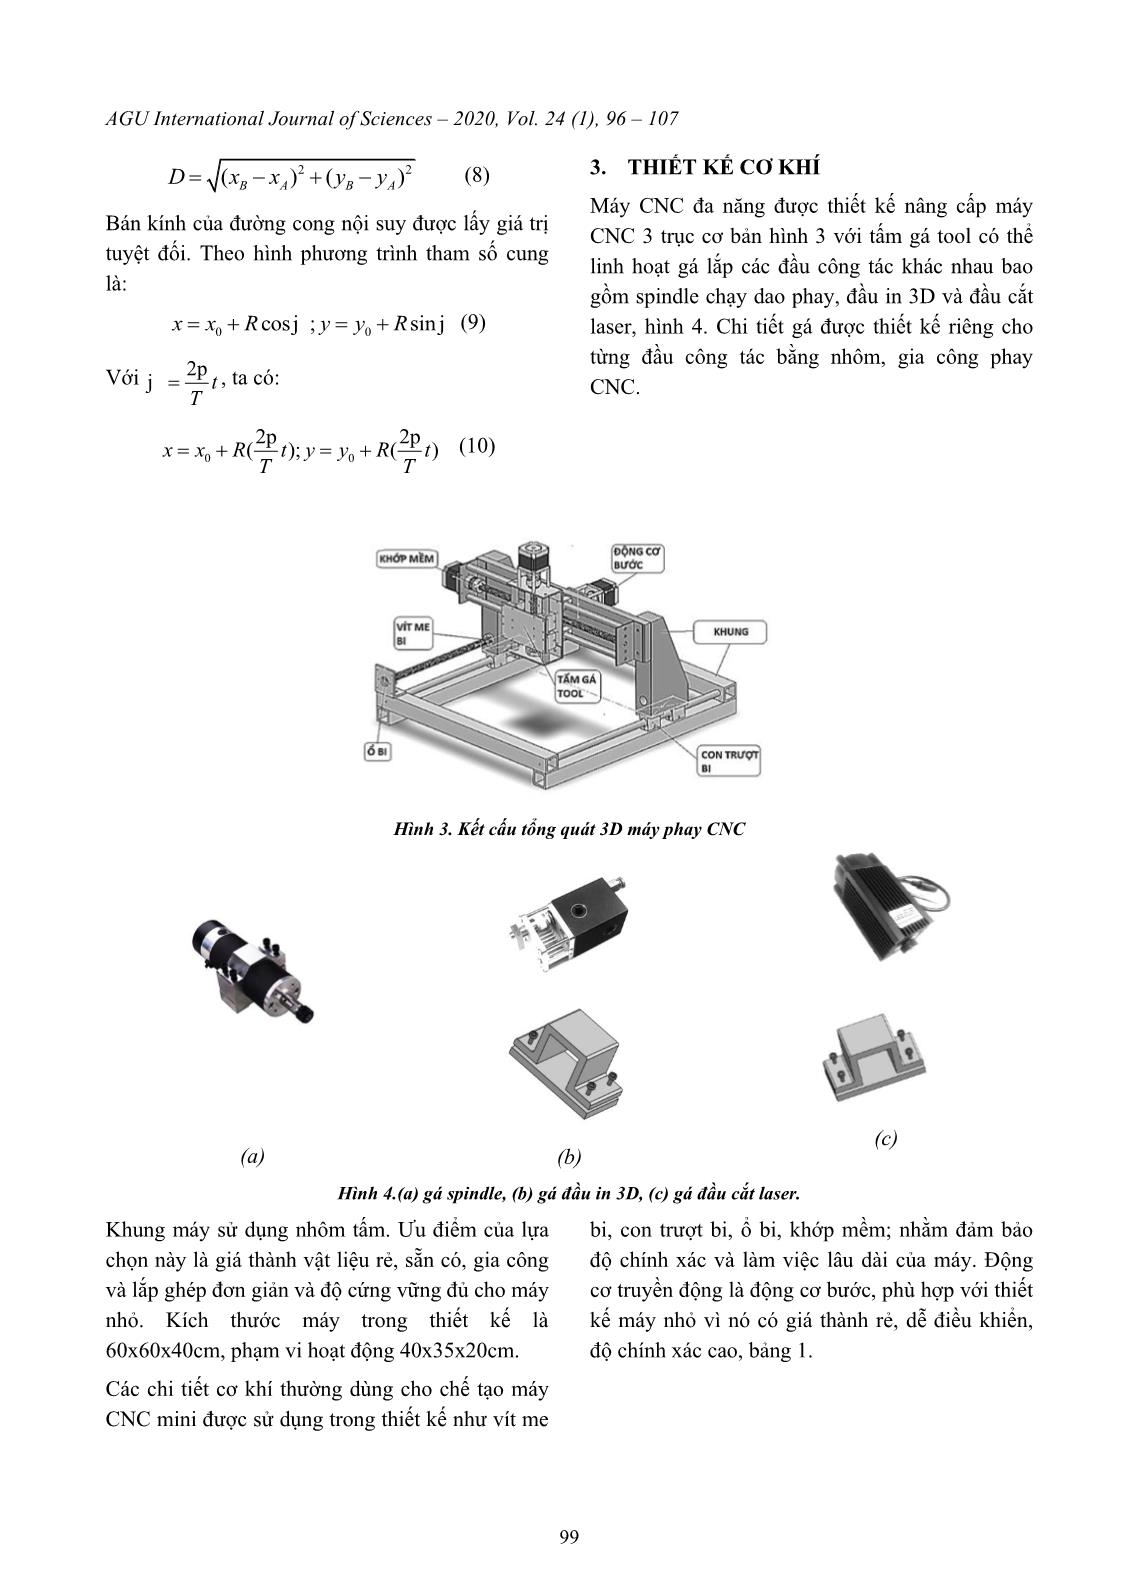 Thiết kế máy CNC mini đa tính năng trang 4